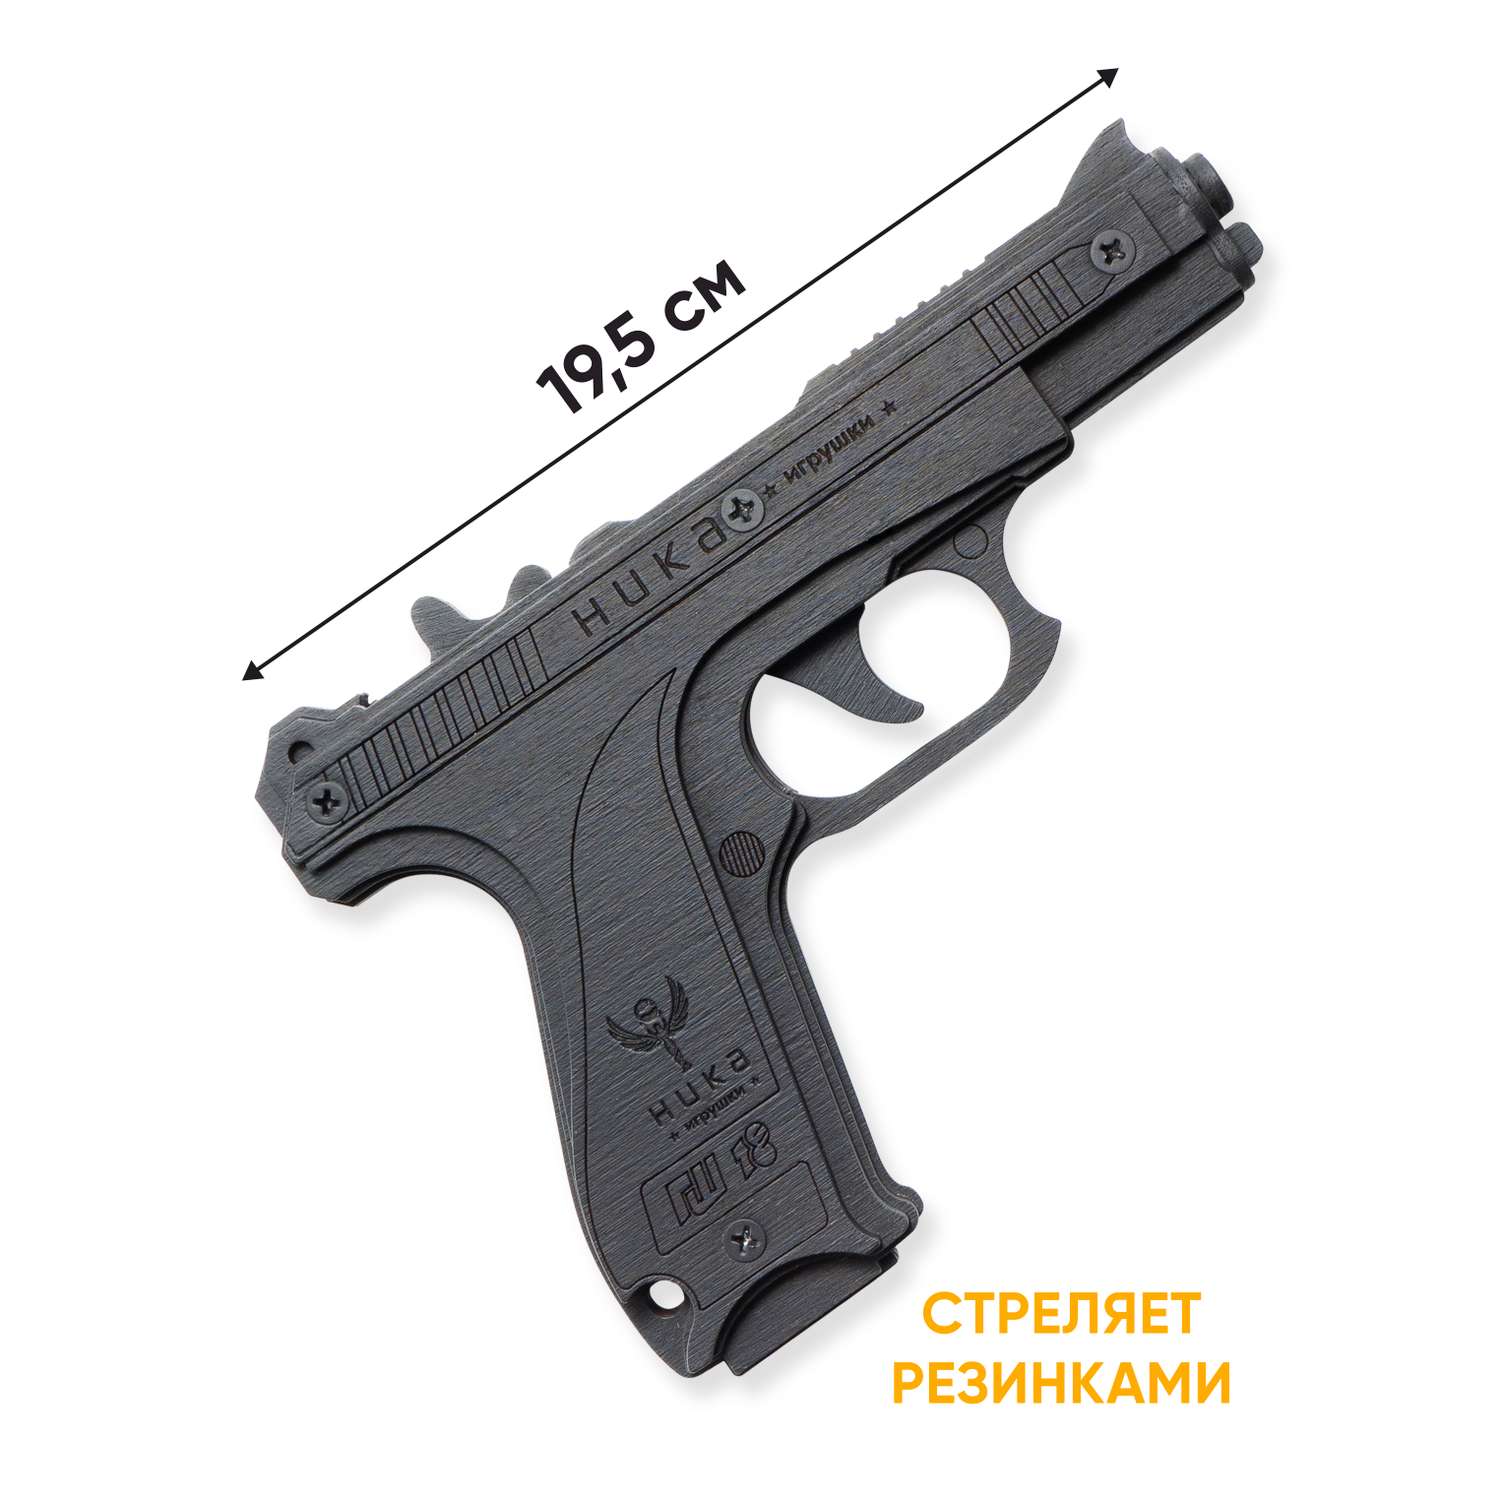 Резинкострел НИКА игрушки Пистолет ГШ-18 в подарочной упаковке - фото 4